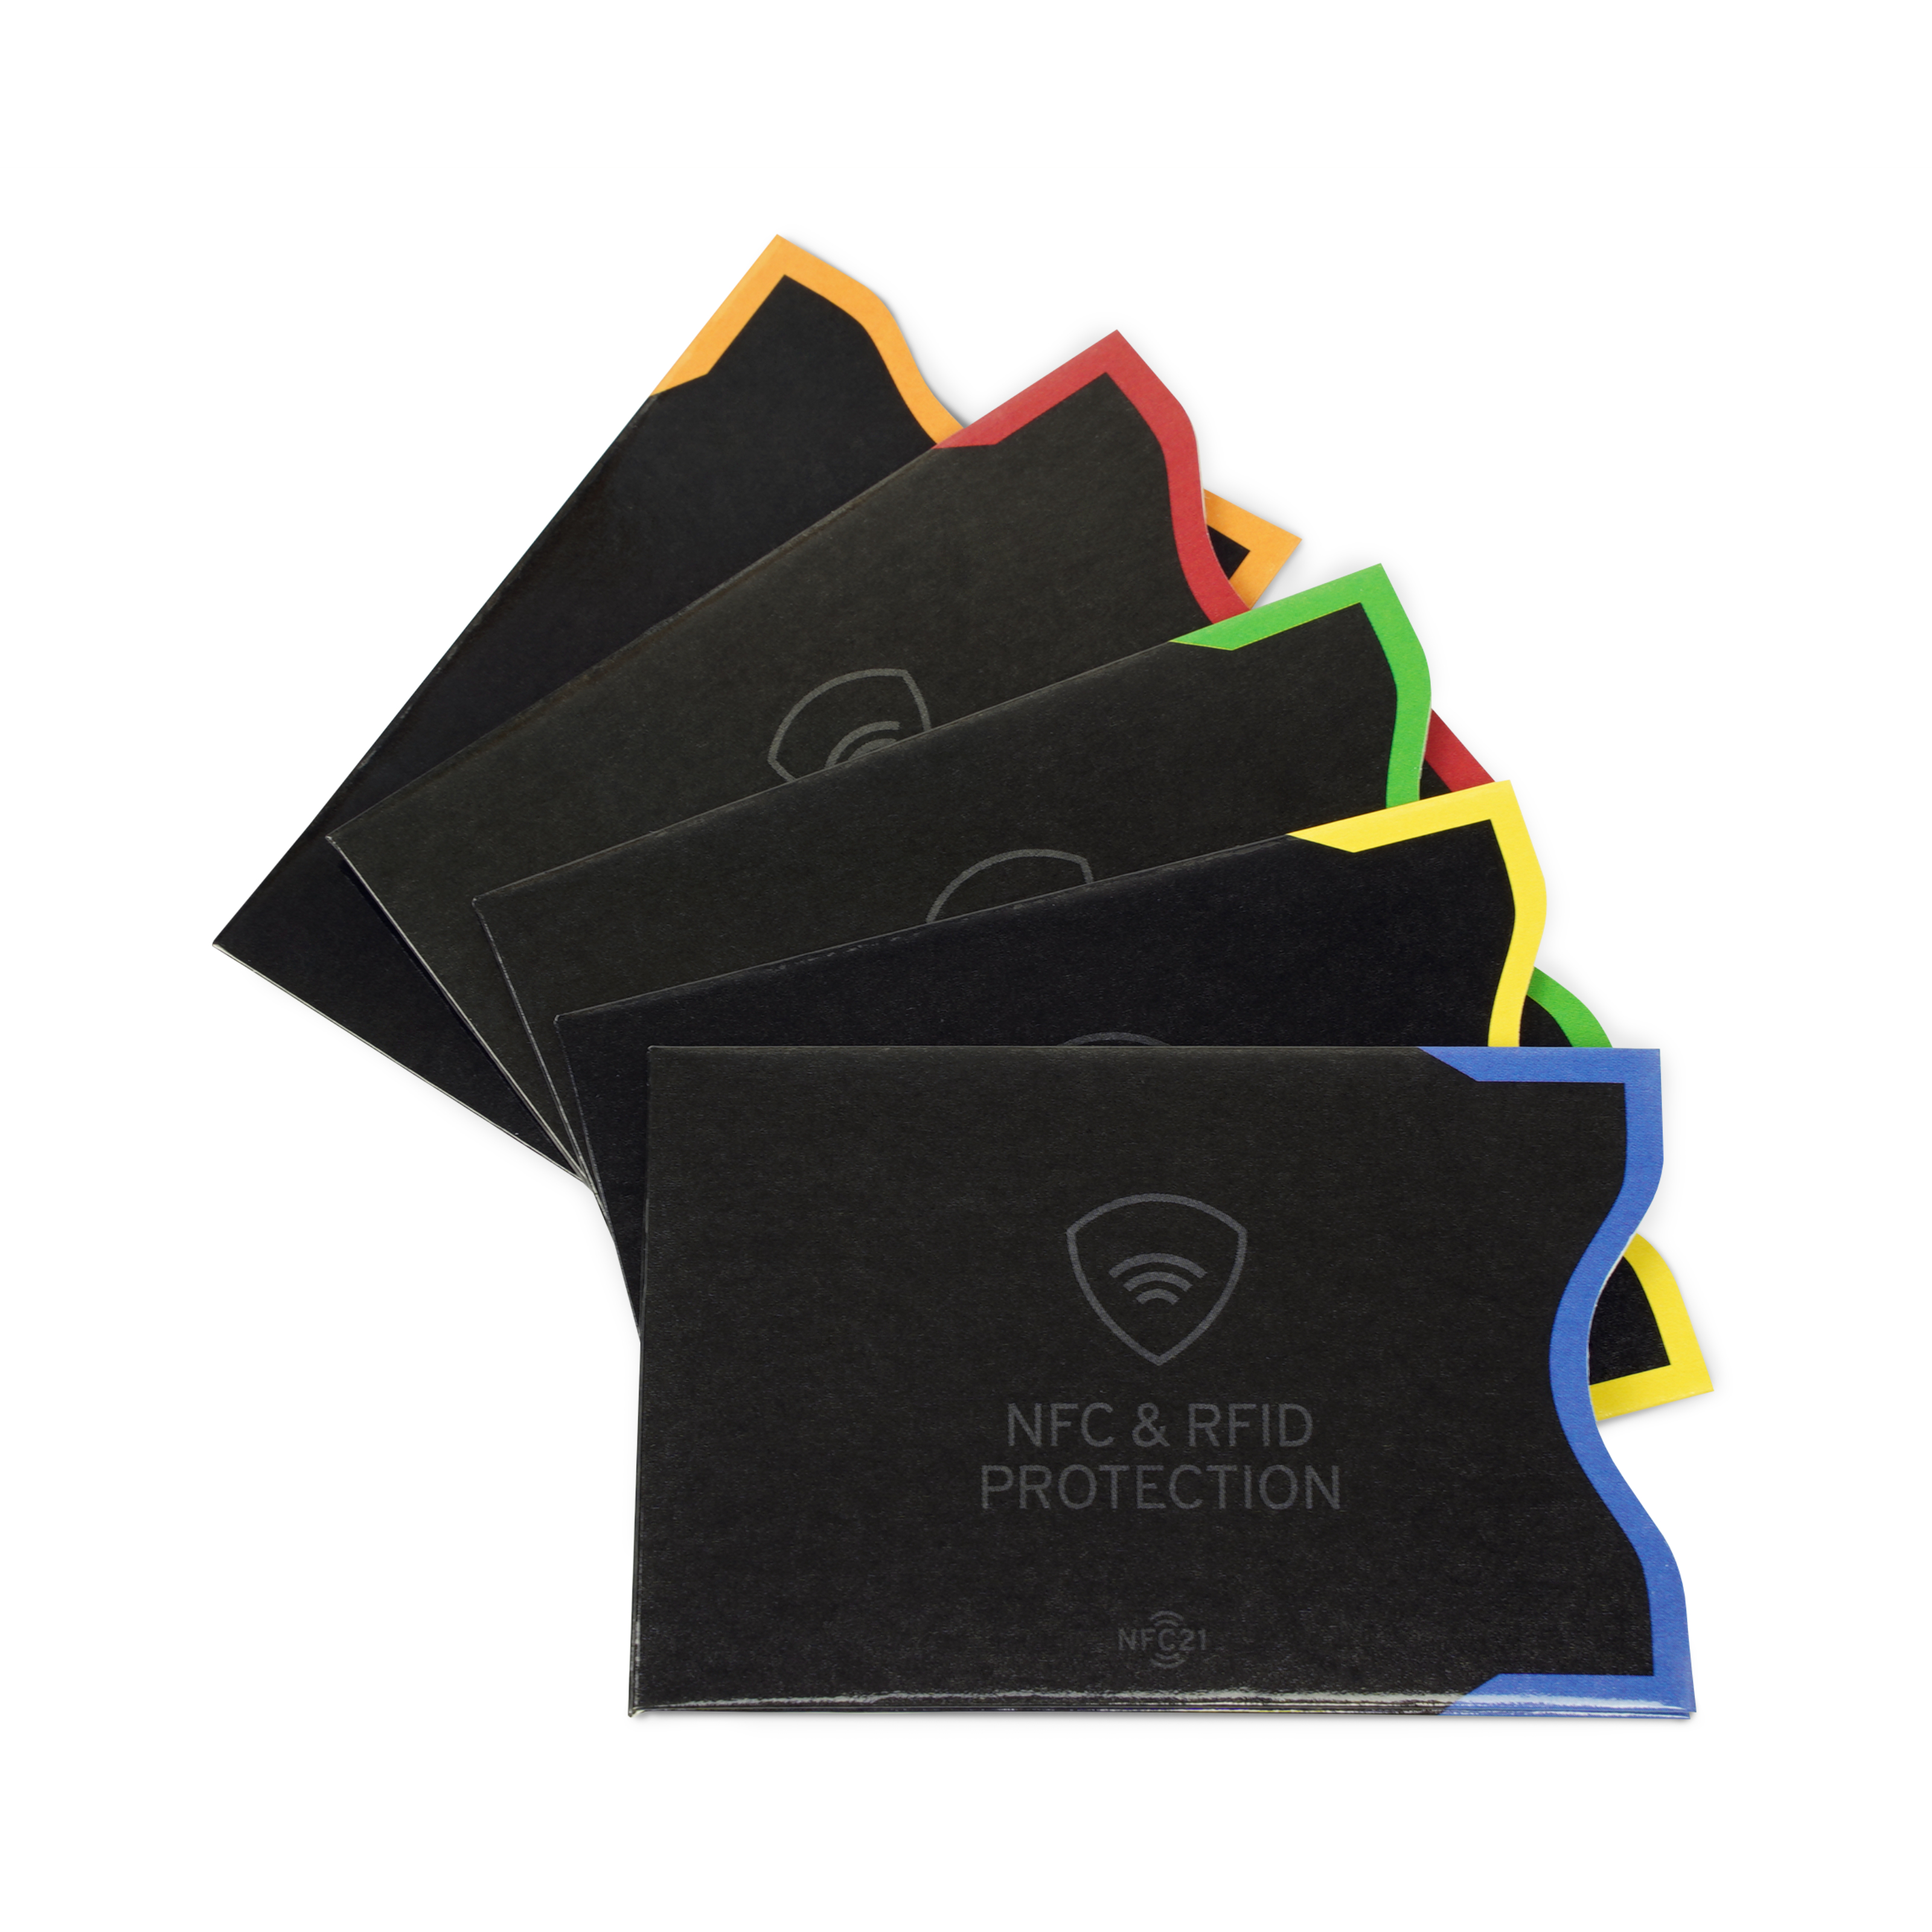 Gruppenbild mit fünf NFC- und RFID Schutzhüllen für NFC Karten in schwarz mit bunten Kanten